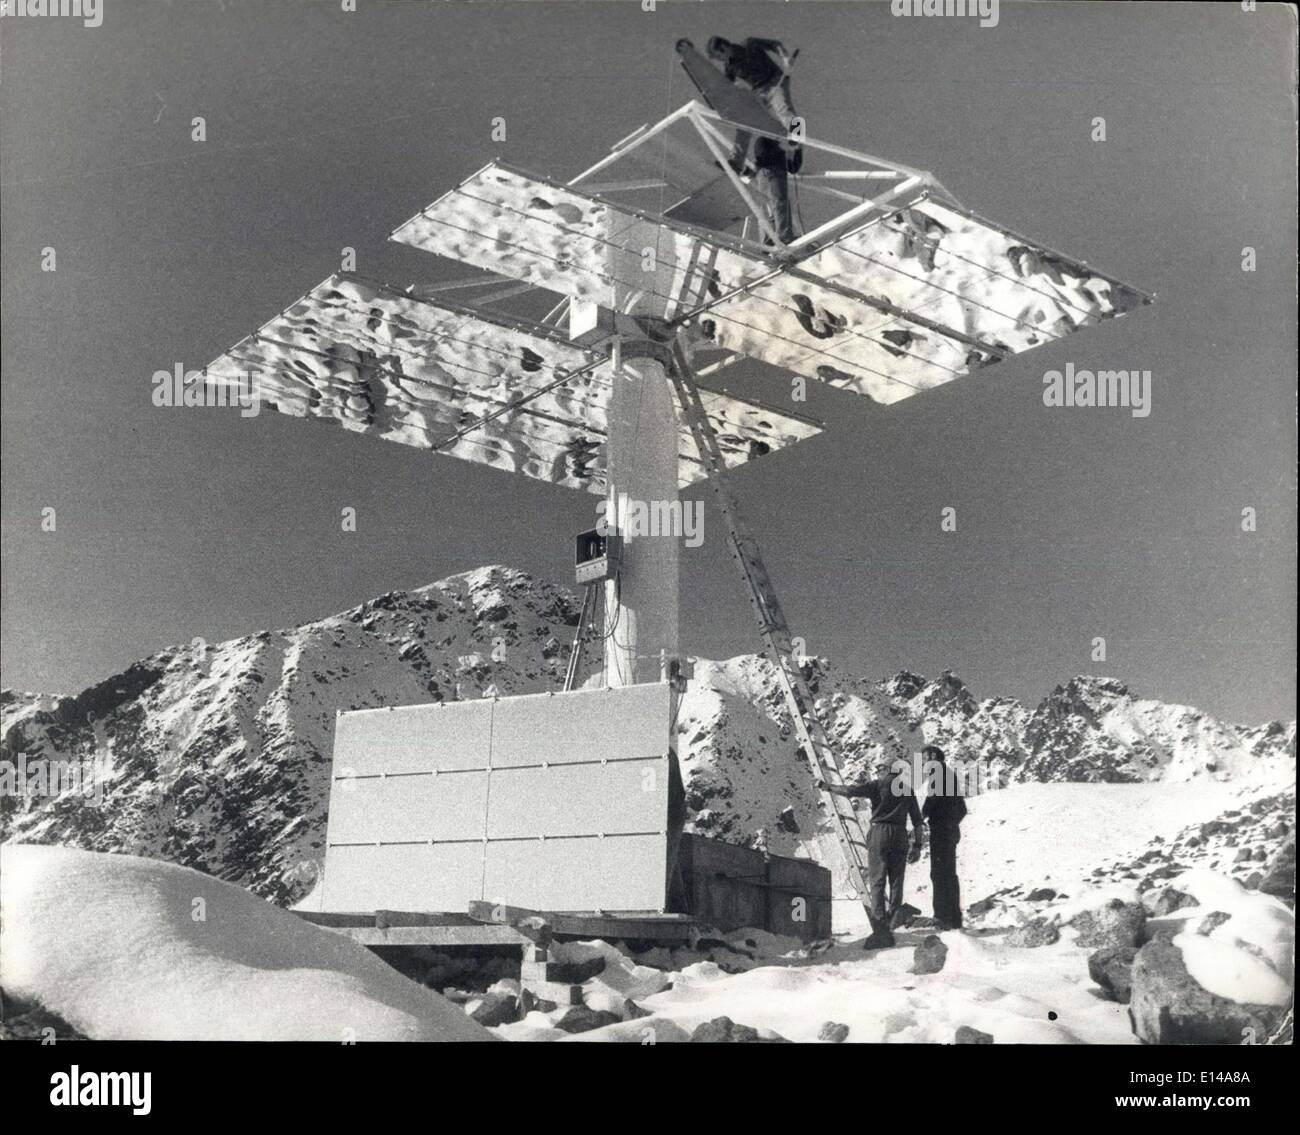 Apr. 17, 2012 - Mirroring sun: i lavoratori fissare elementi a specchio di un heliostat trova  montagna Svizzera orientale. Il dispositivo è  due anni di esperimento in energia solare dallo svizzero Cunter ricerca atomica Foto Stock